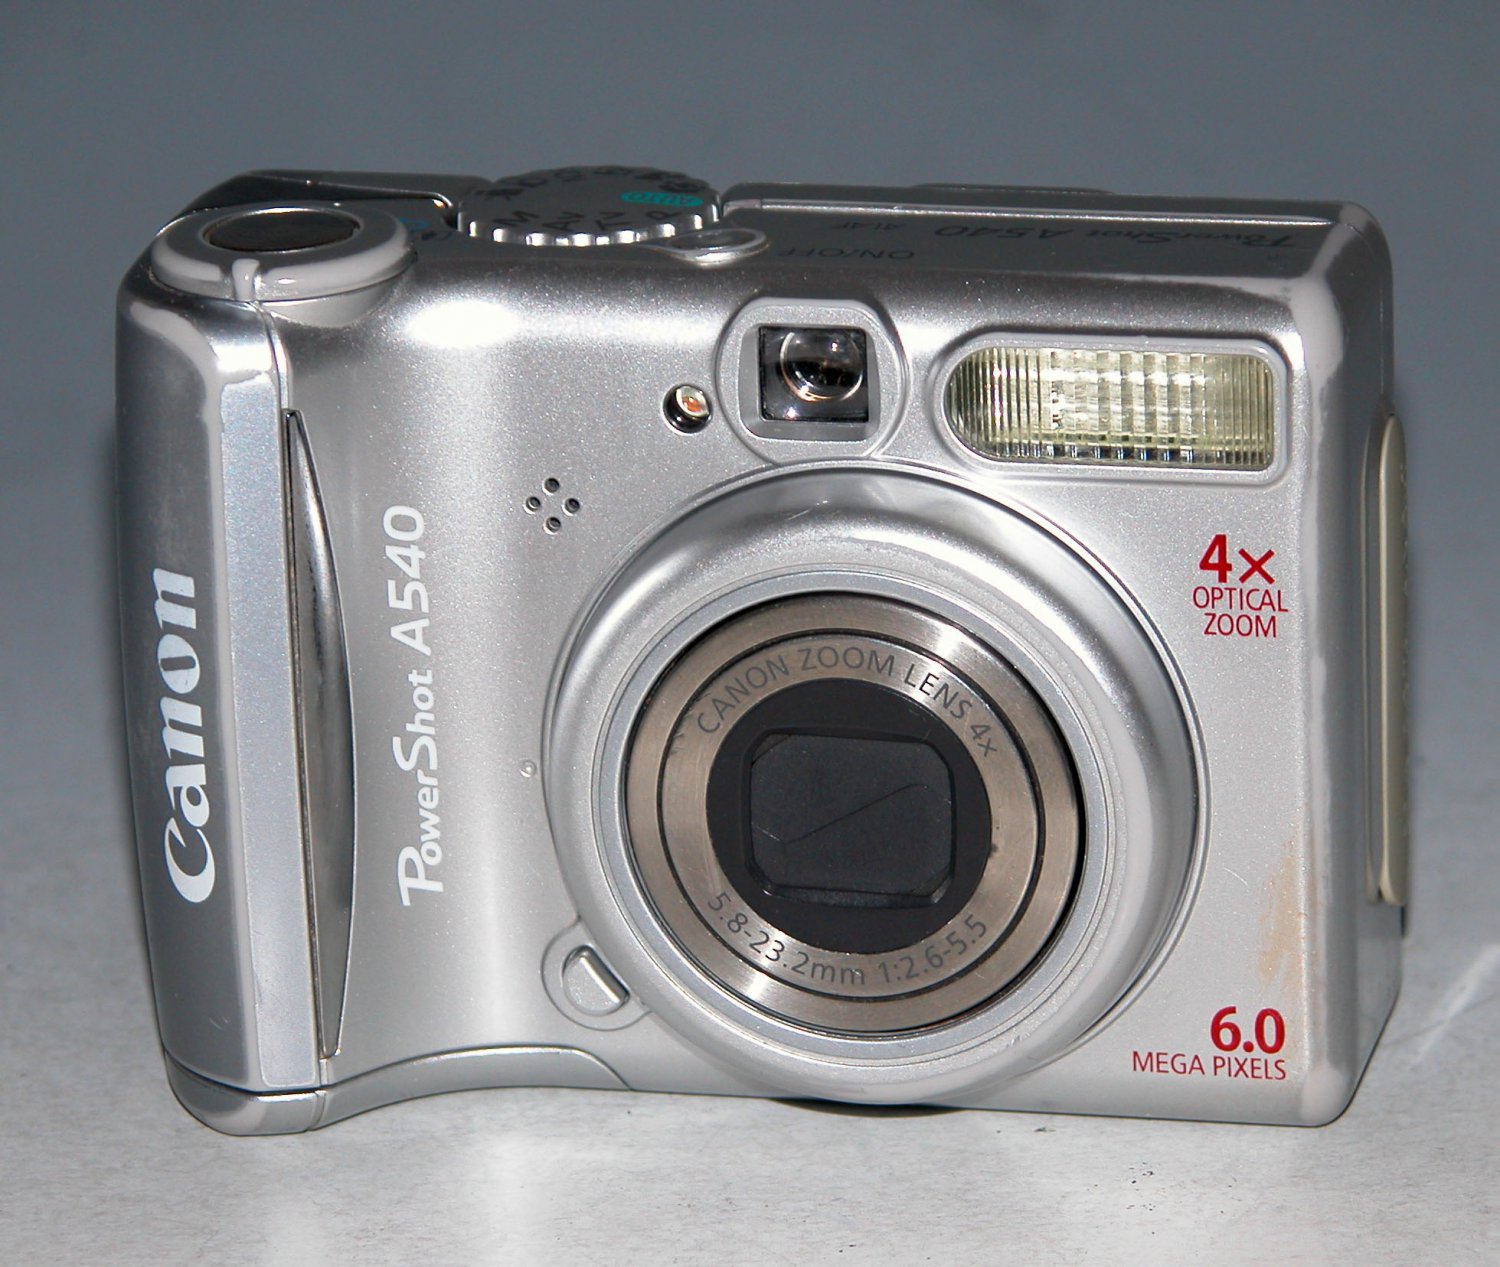 Canon PowerShot A540 デジカメ オールドコンデジ+secpp.com.br